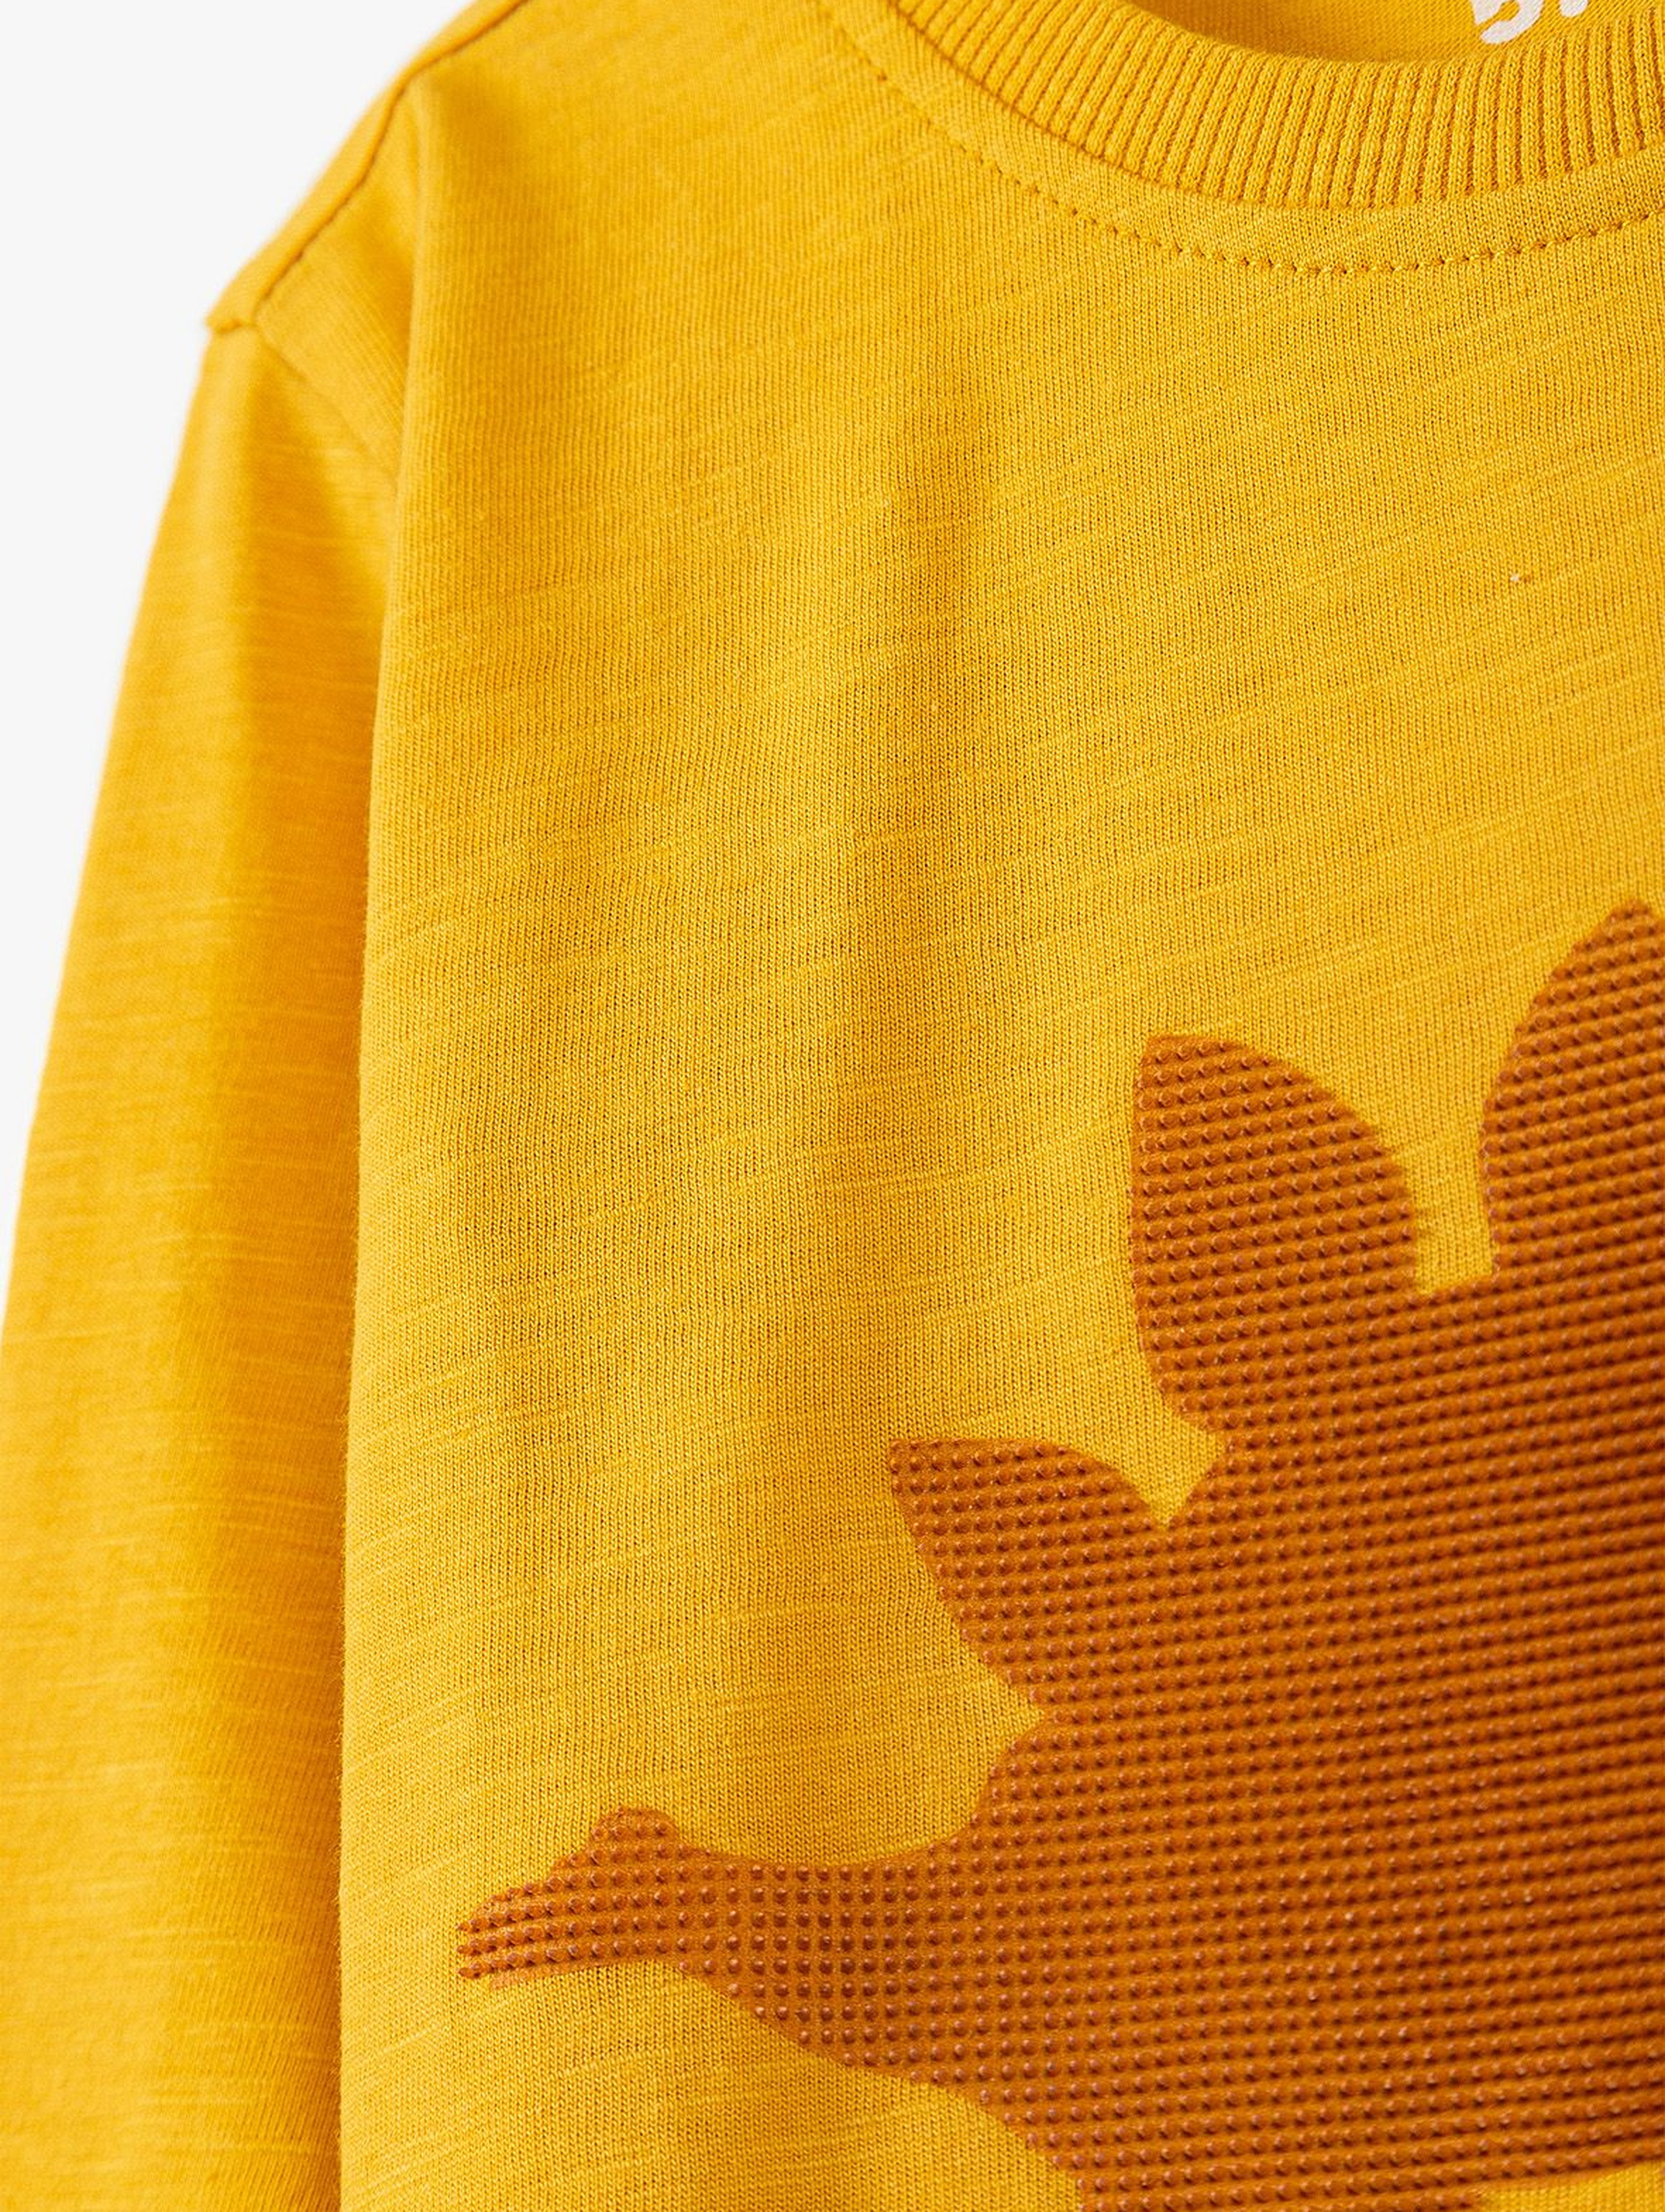 Bawełniana bluzka chłopięca z dinozaurem - żółta